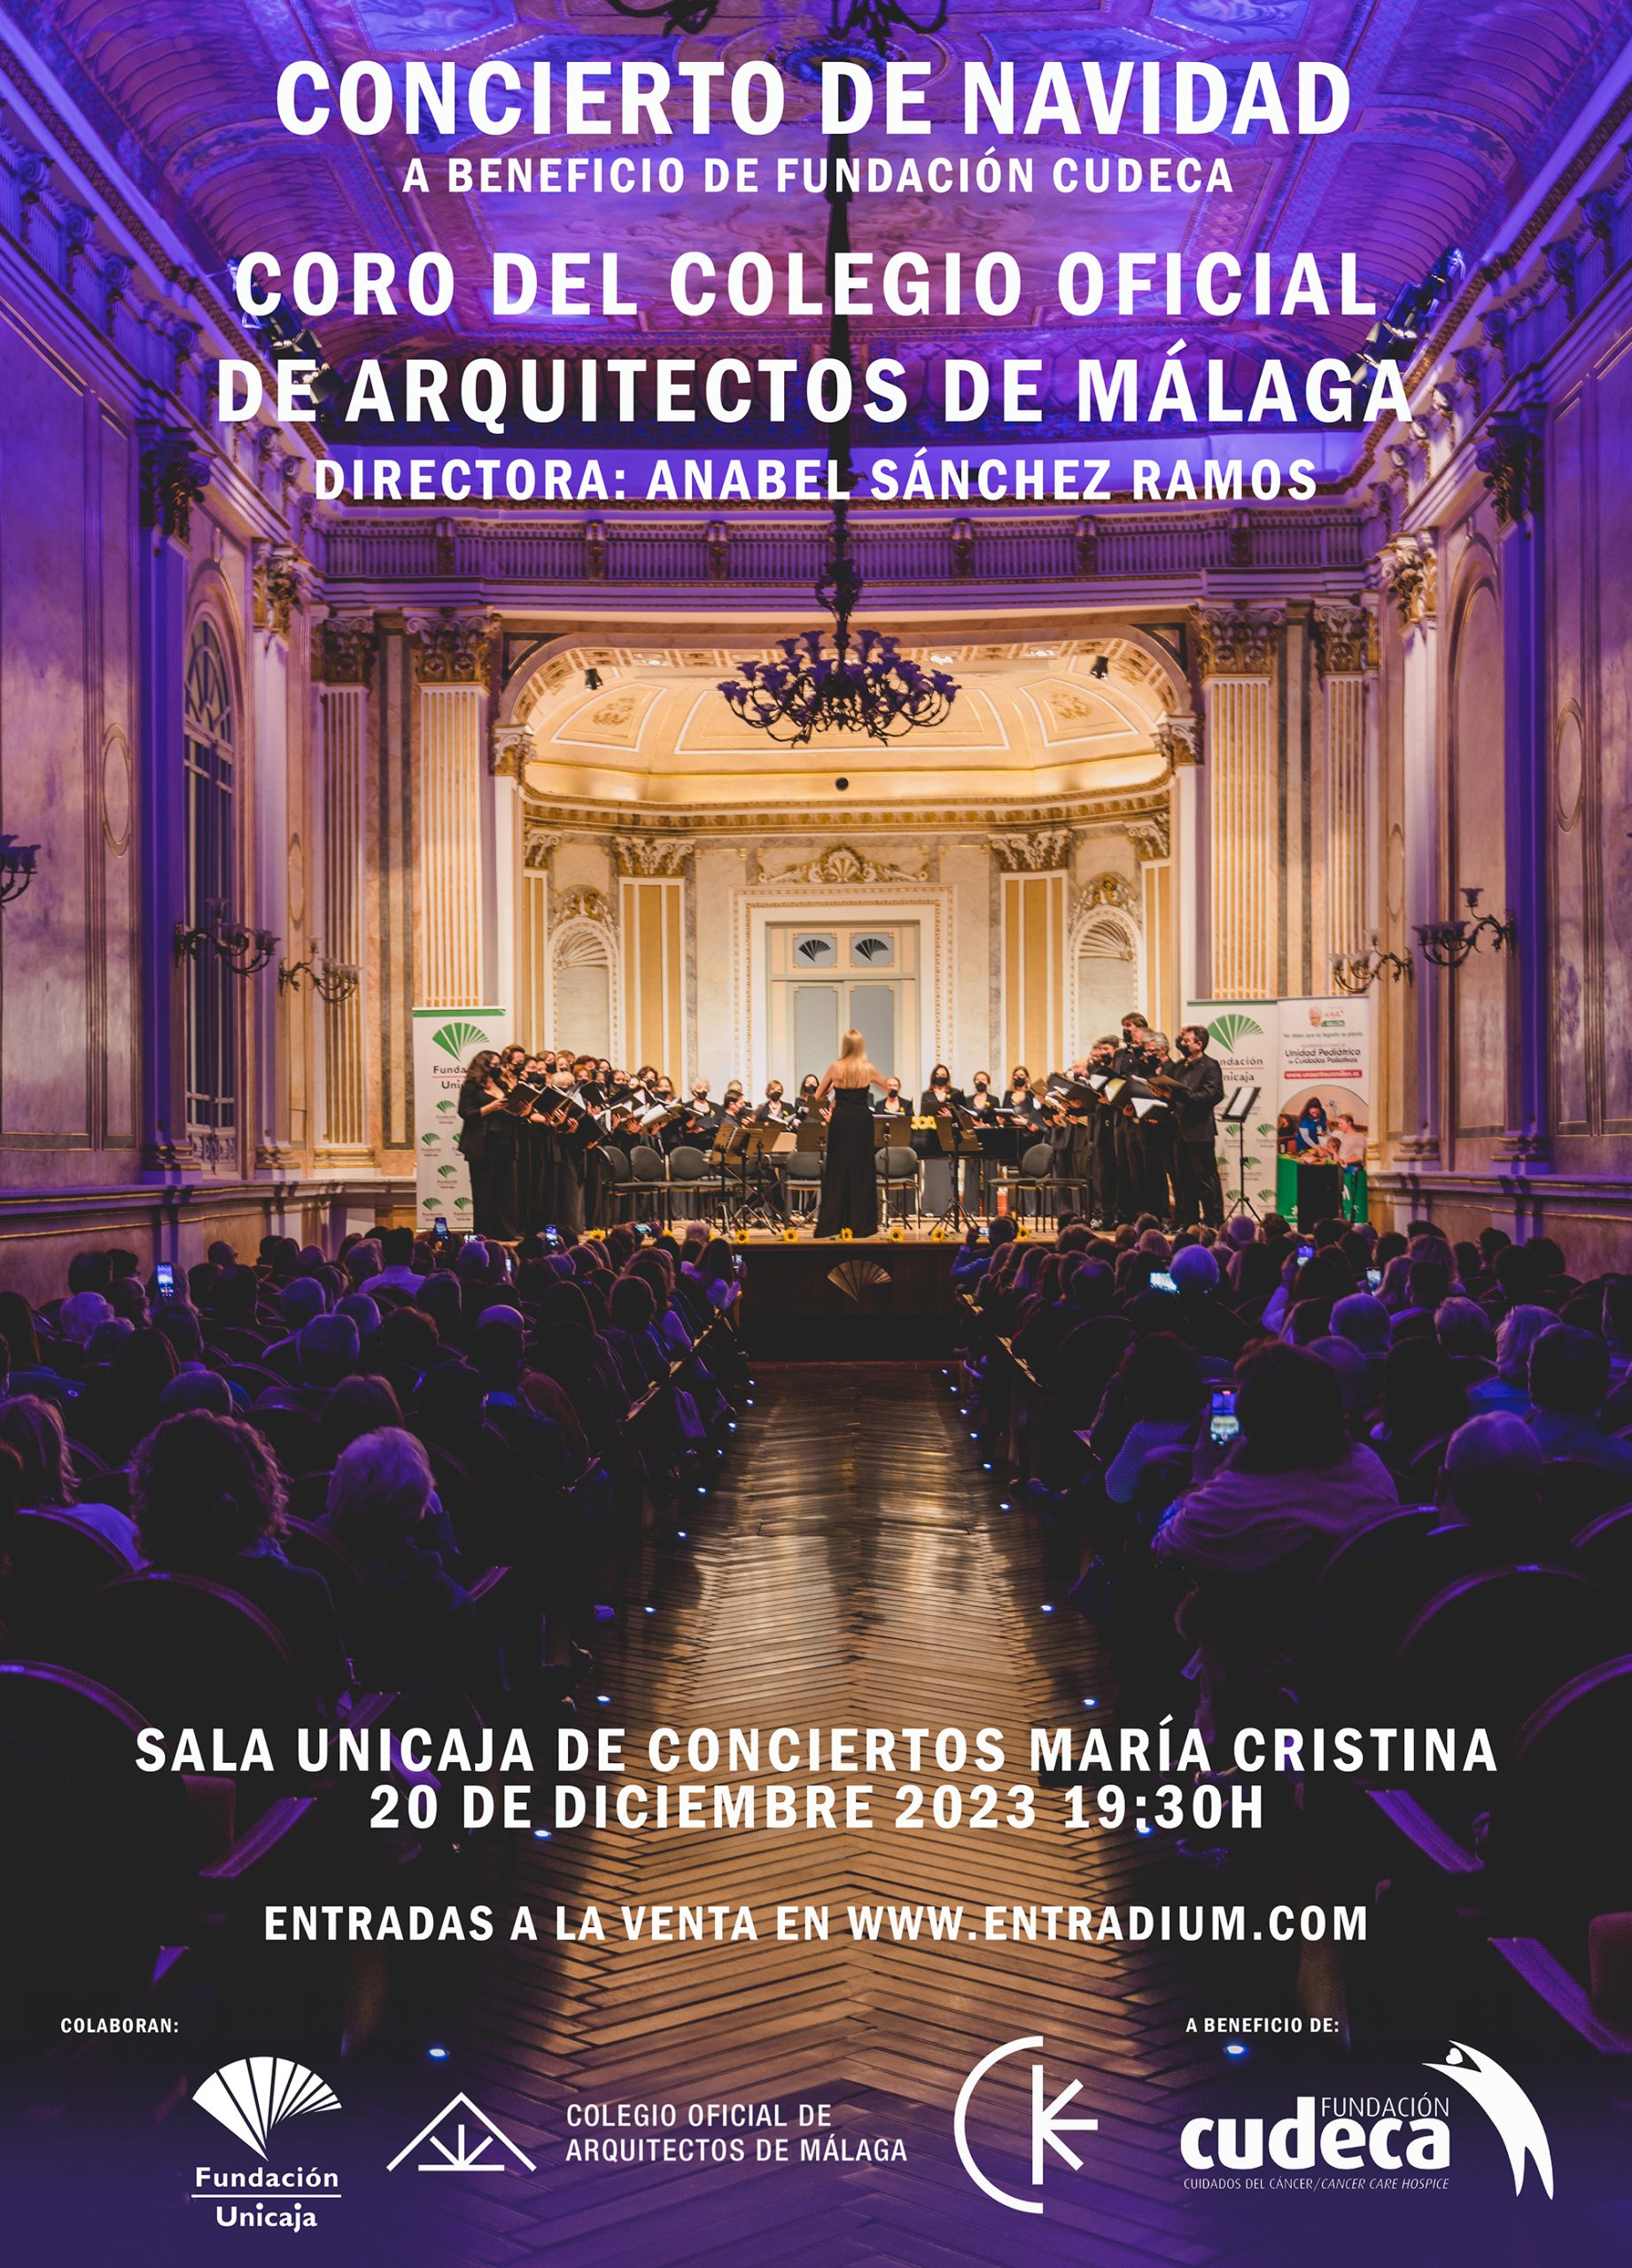 Concierto de Navidad del Coro del Colegio Oficial de Arquitectos de Málaga a beneficio de CUDECA